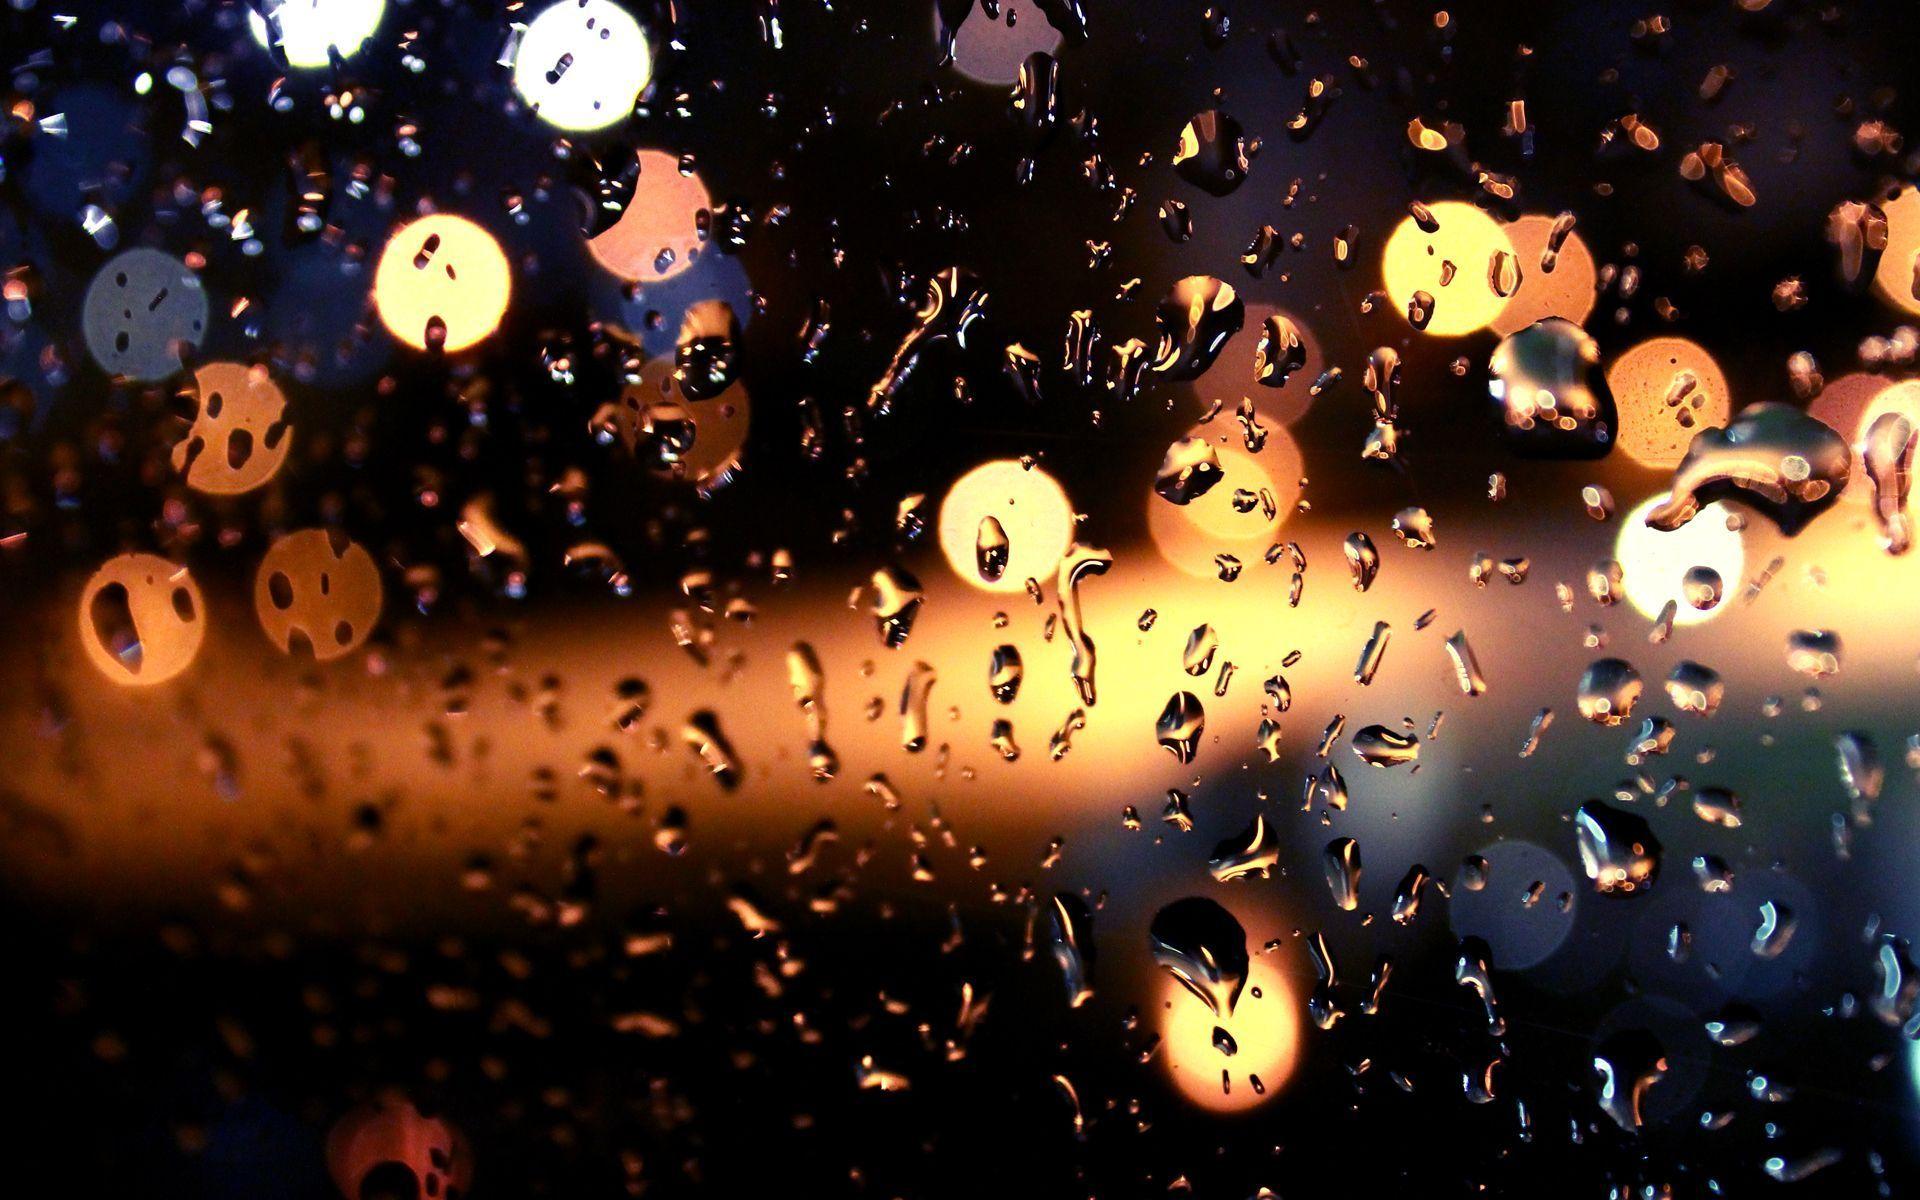 Raindrops Window Lights Wallpaper HD 50542 1920x1200 px